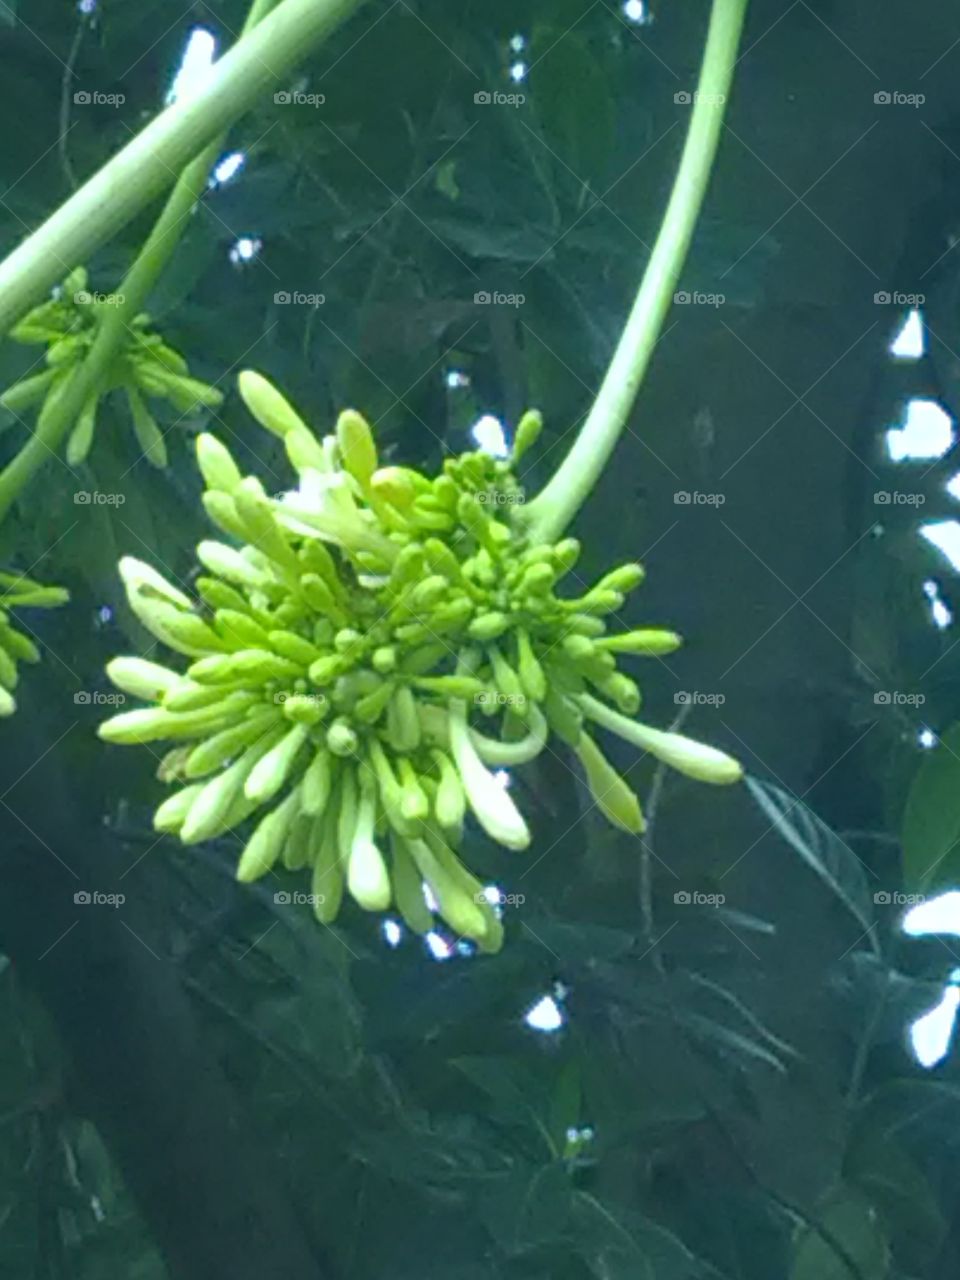 Papaya's flowers